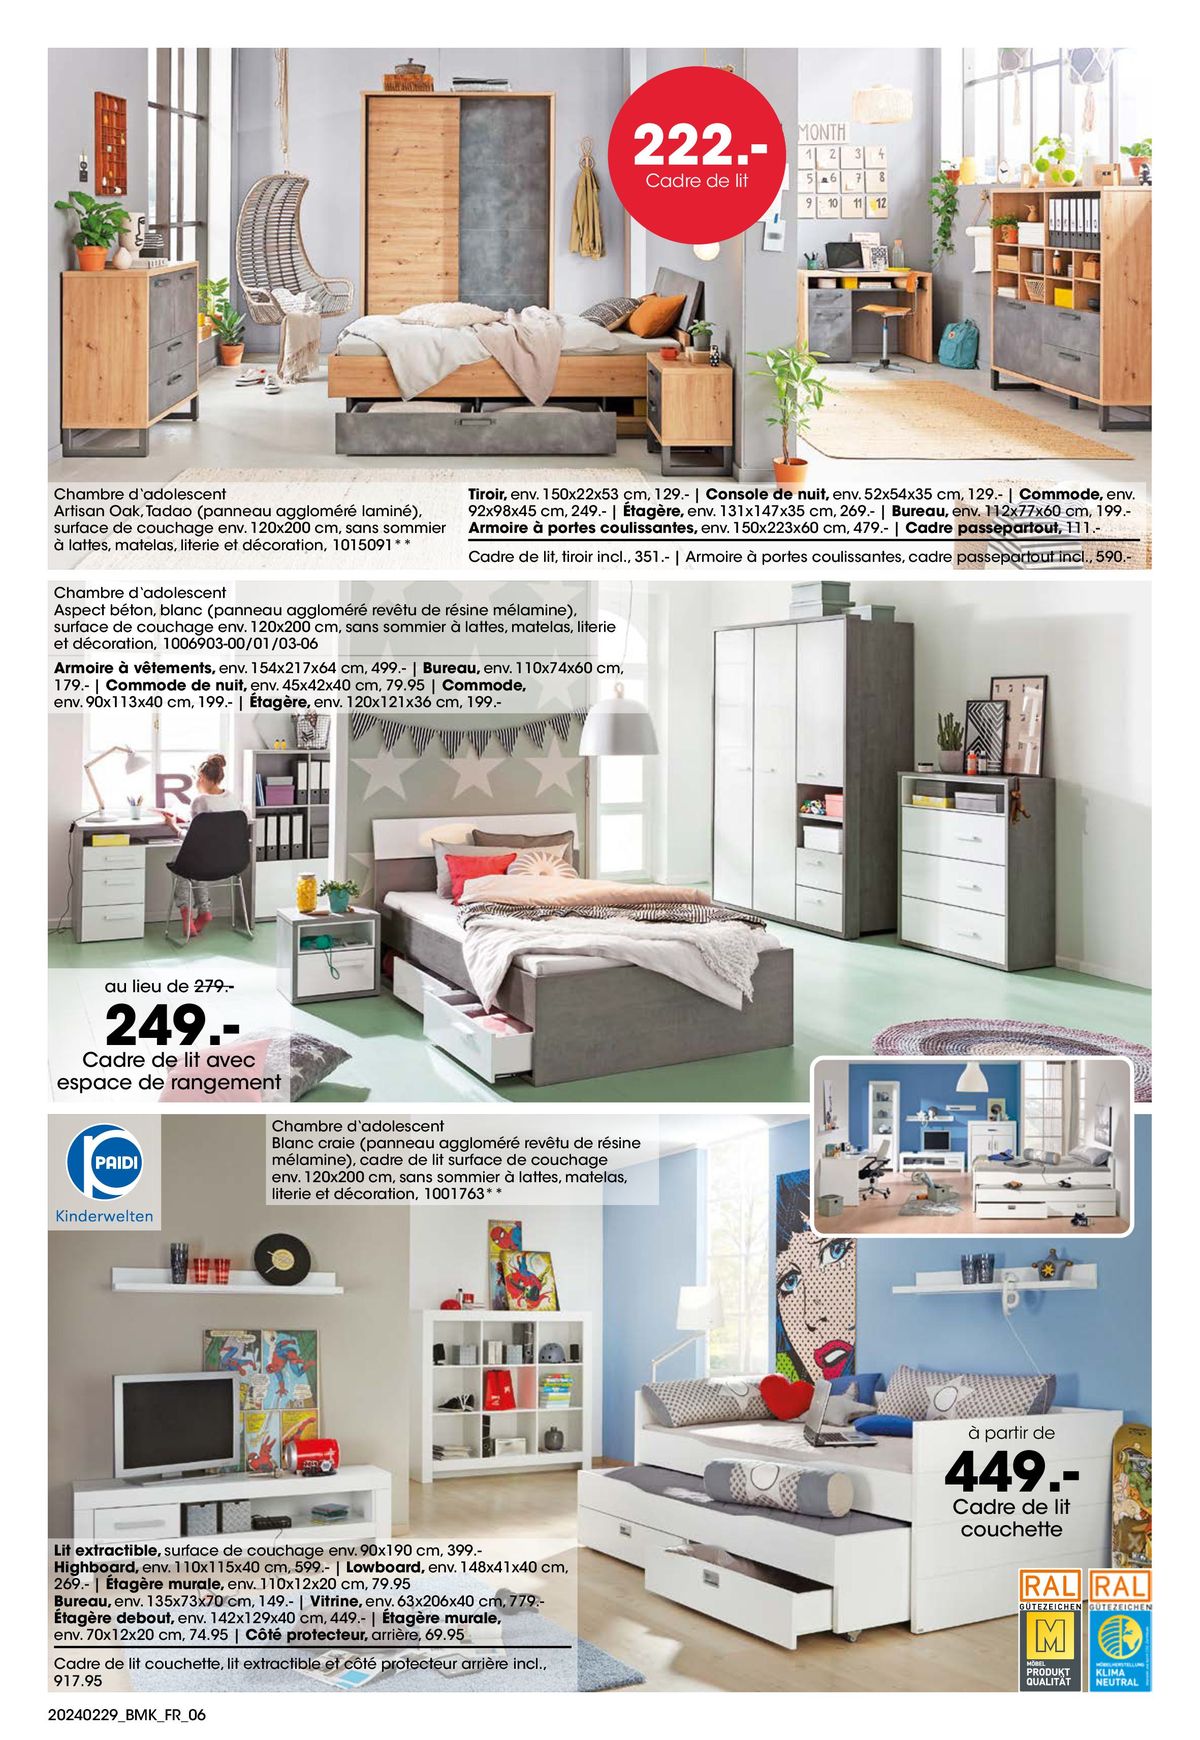 Catalogue Votre nouveau chez-vous avec GARANTIE-MEILLEUR PRIX, page 00006